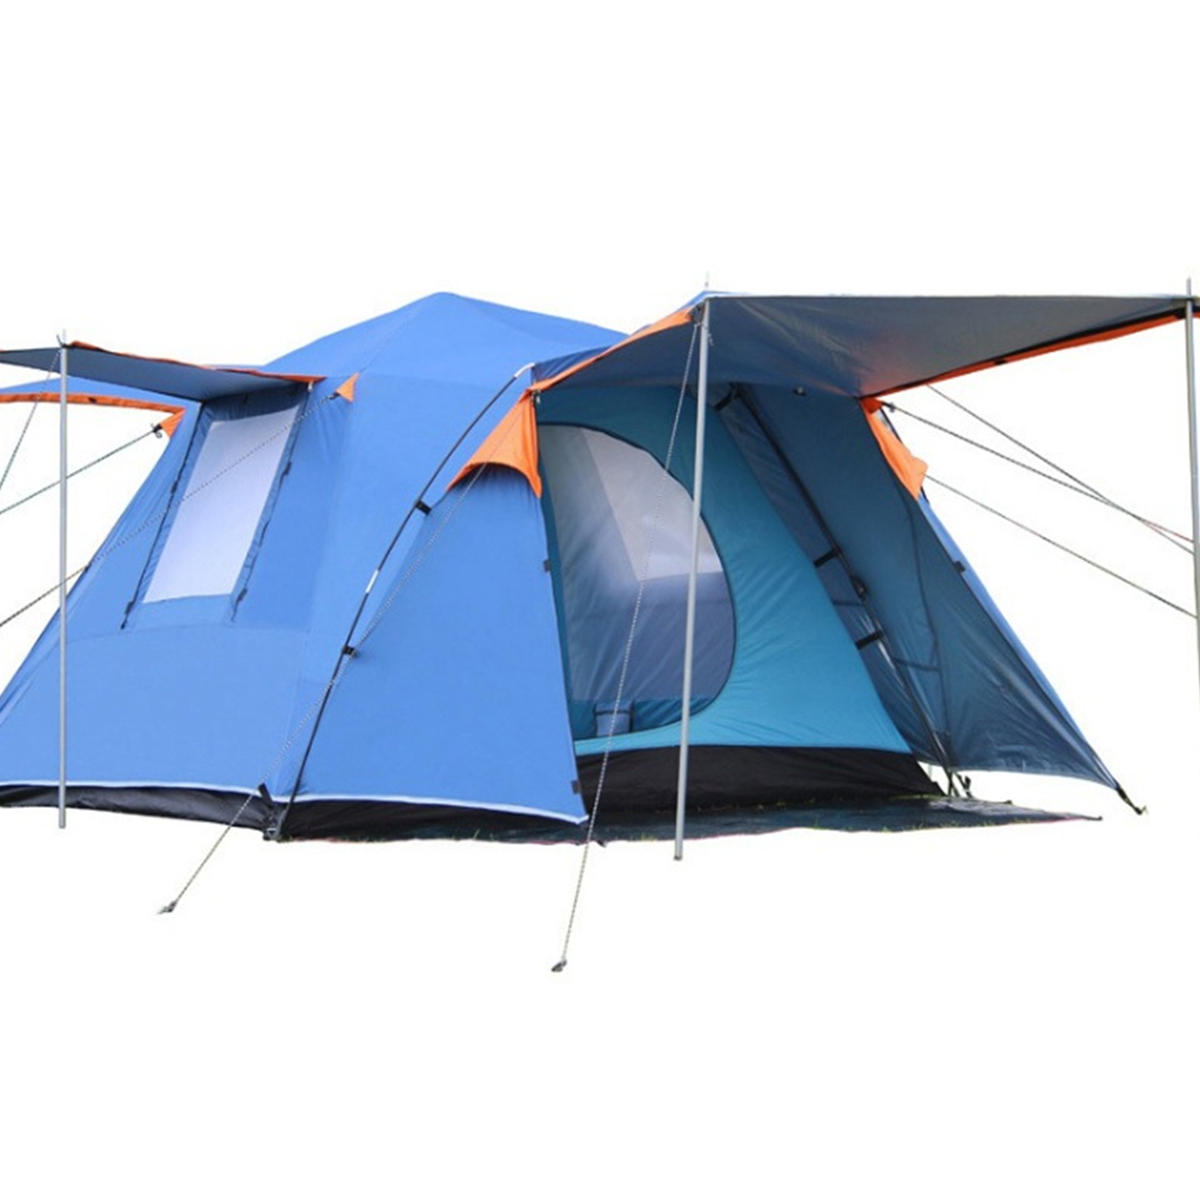 Automatikus sátor 3-4 ember számára a szabadban, vízálló dupla réteggel és napernyővel.